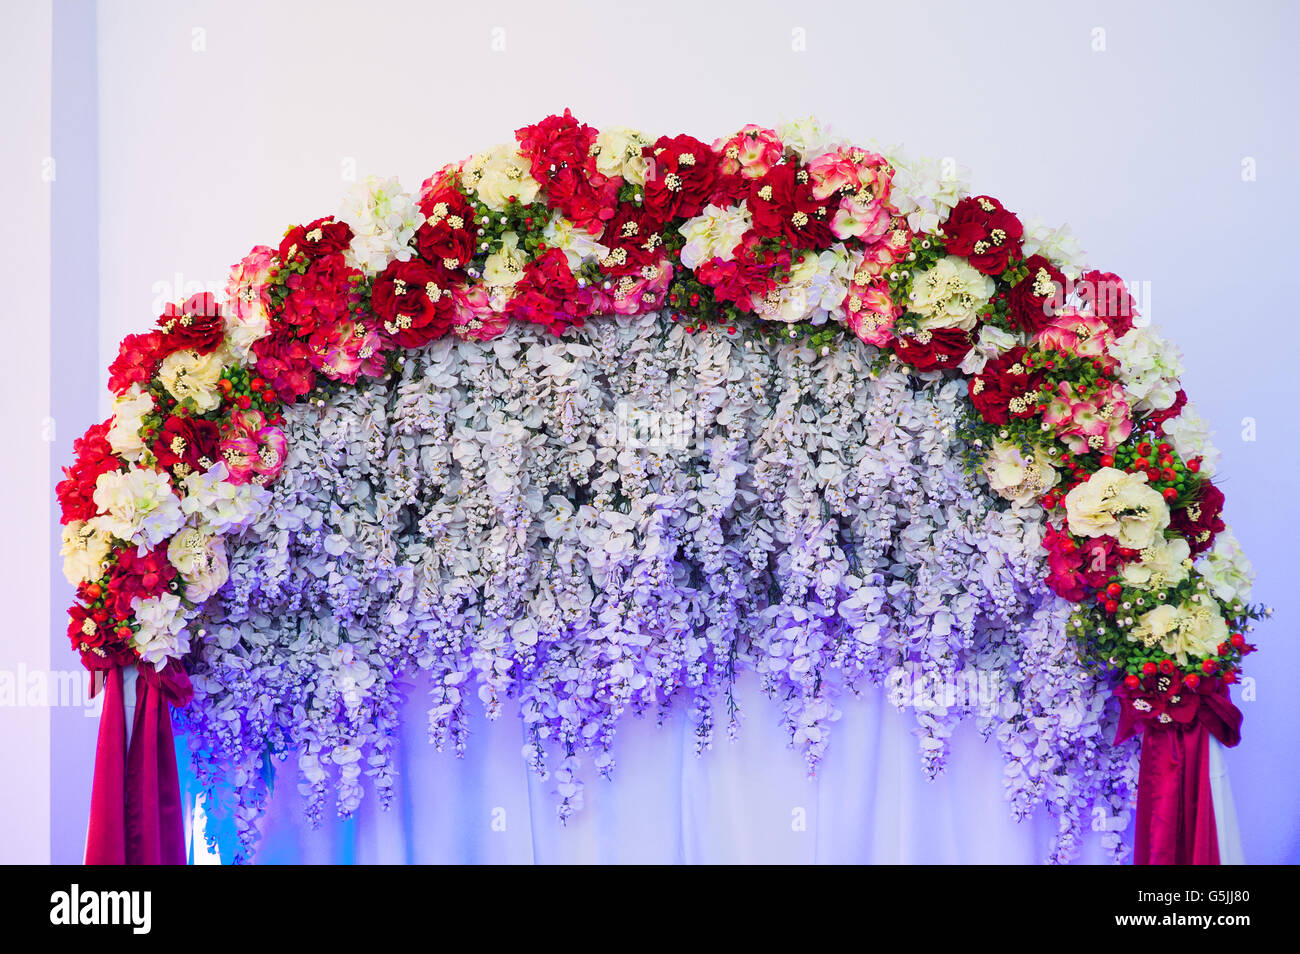 Beautiful wedding arch décoré de fleurs roses et rouges à l'intérieur Banque D'Images